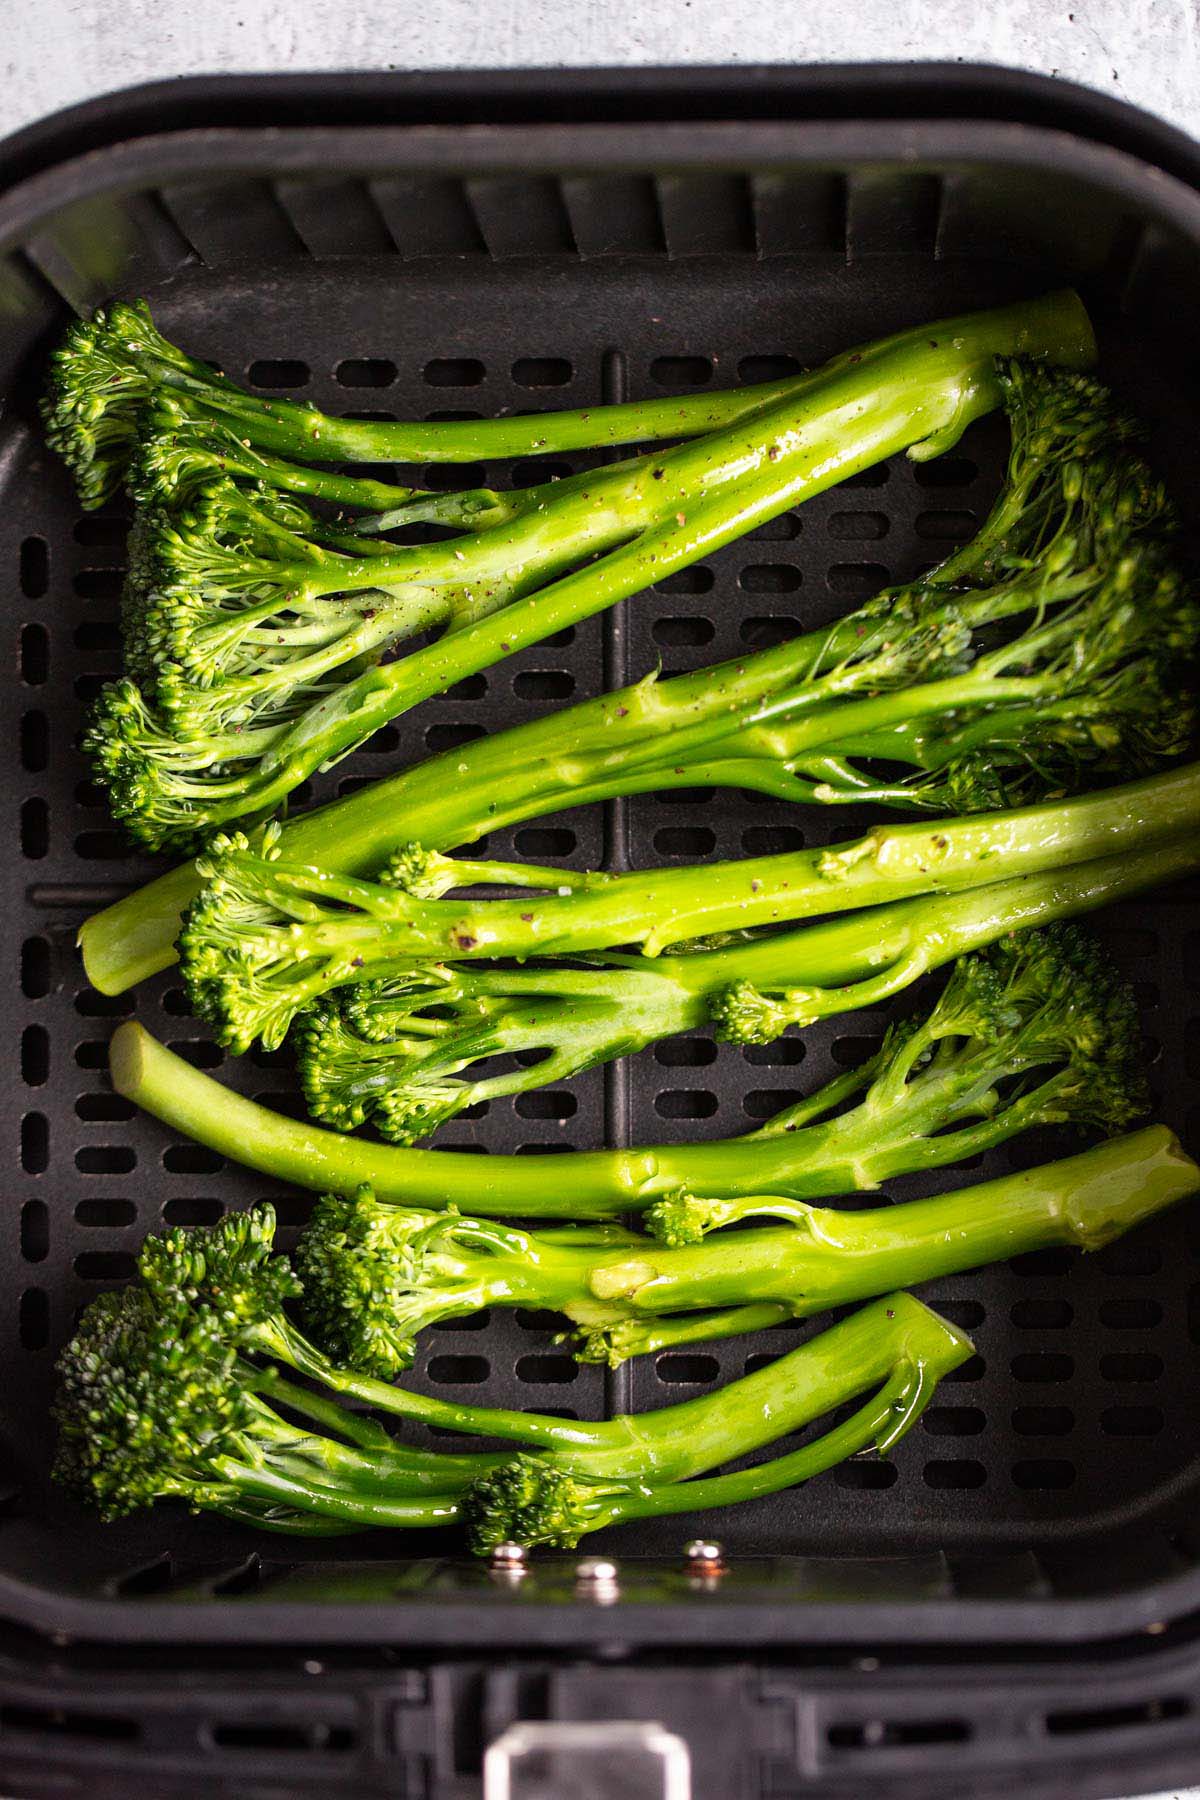 Raw broccolini in air fryer basket.